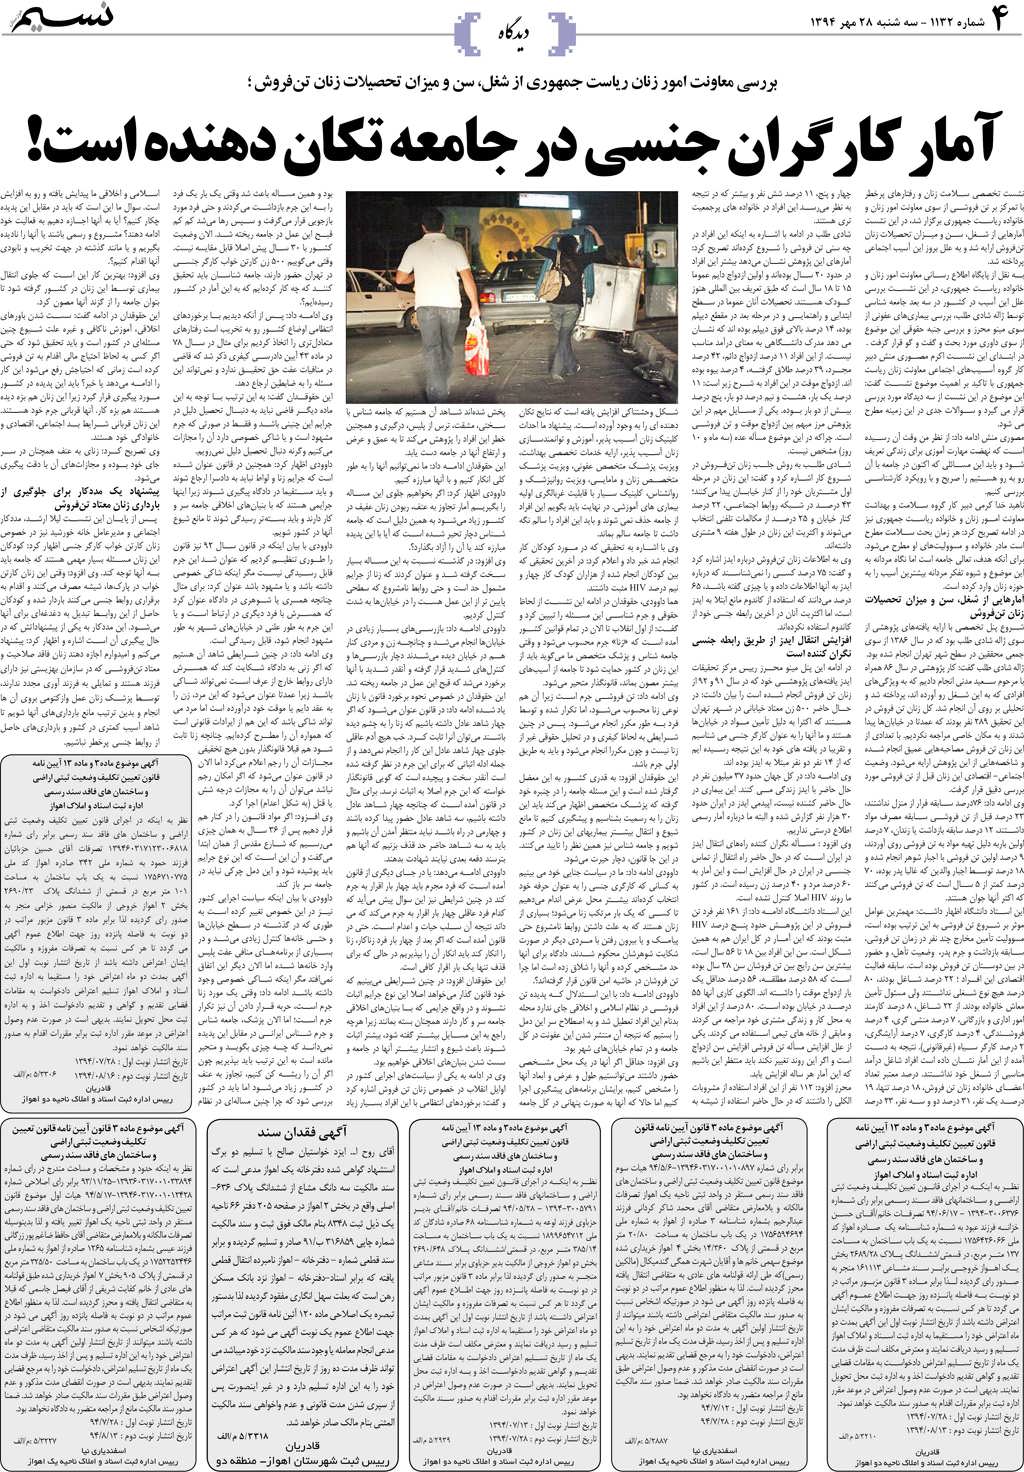 صفحه دیدگاه روزنامه نسیم شماره 1132